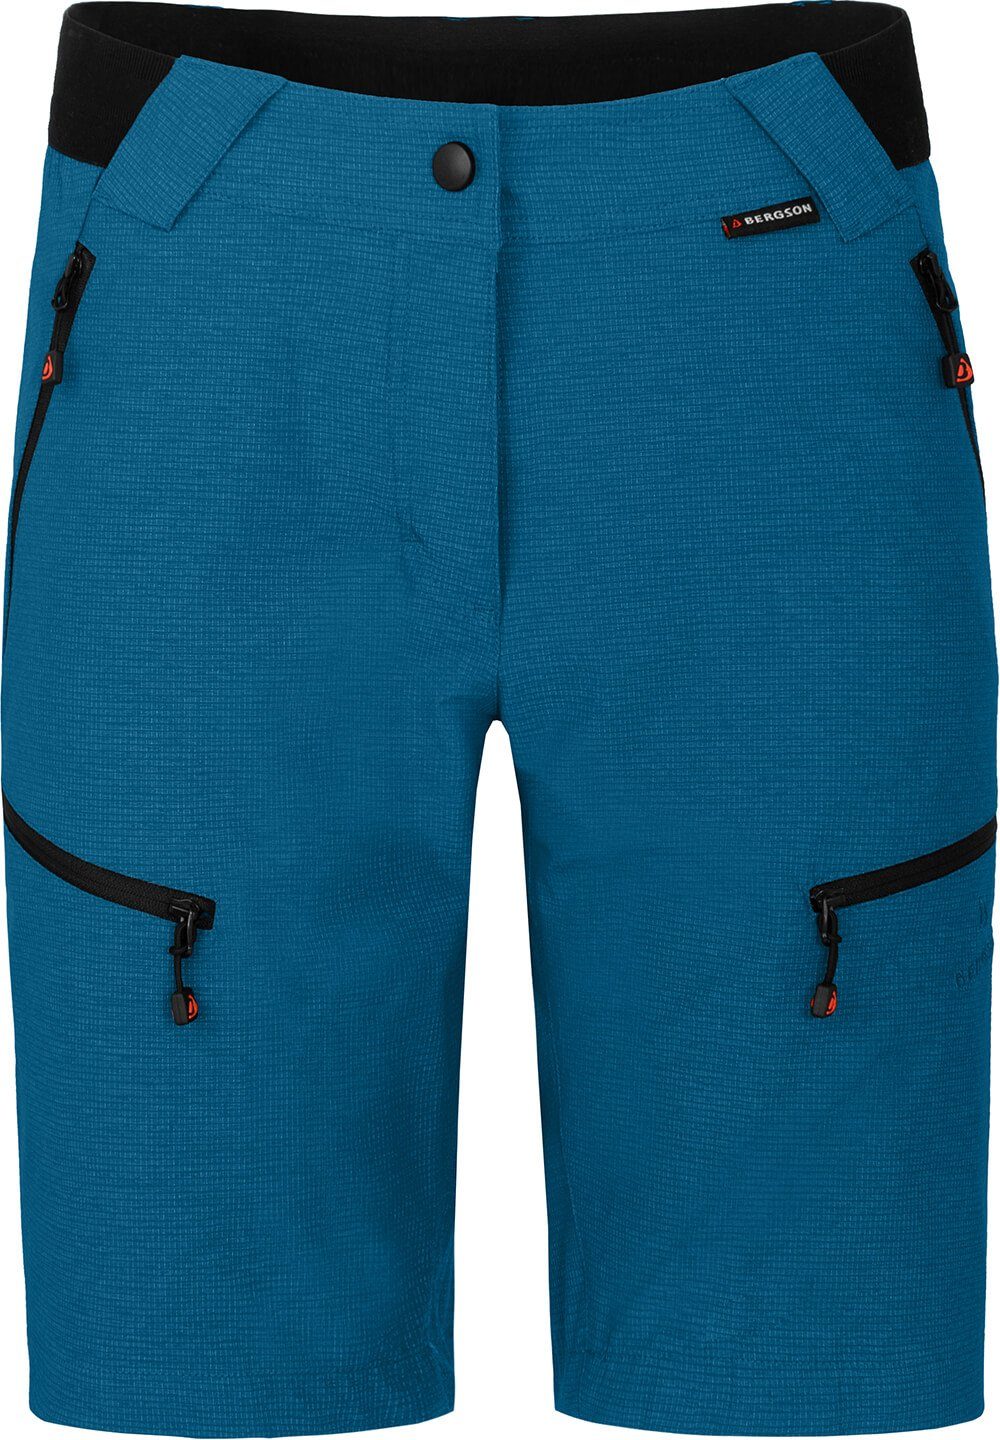 elastisch, Saphir Outdoorhose robust, Bermuda blau Normalgrößen, Bergson PORI Wandershorts, Damen